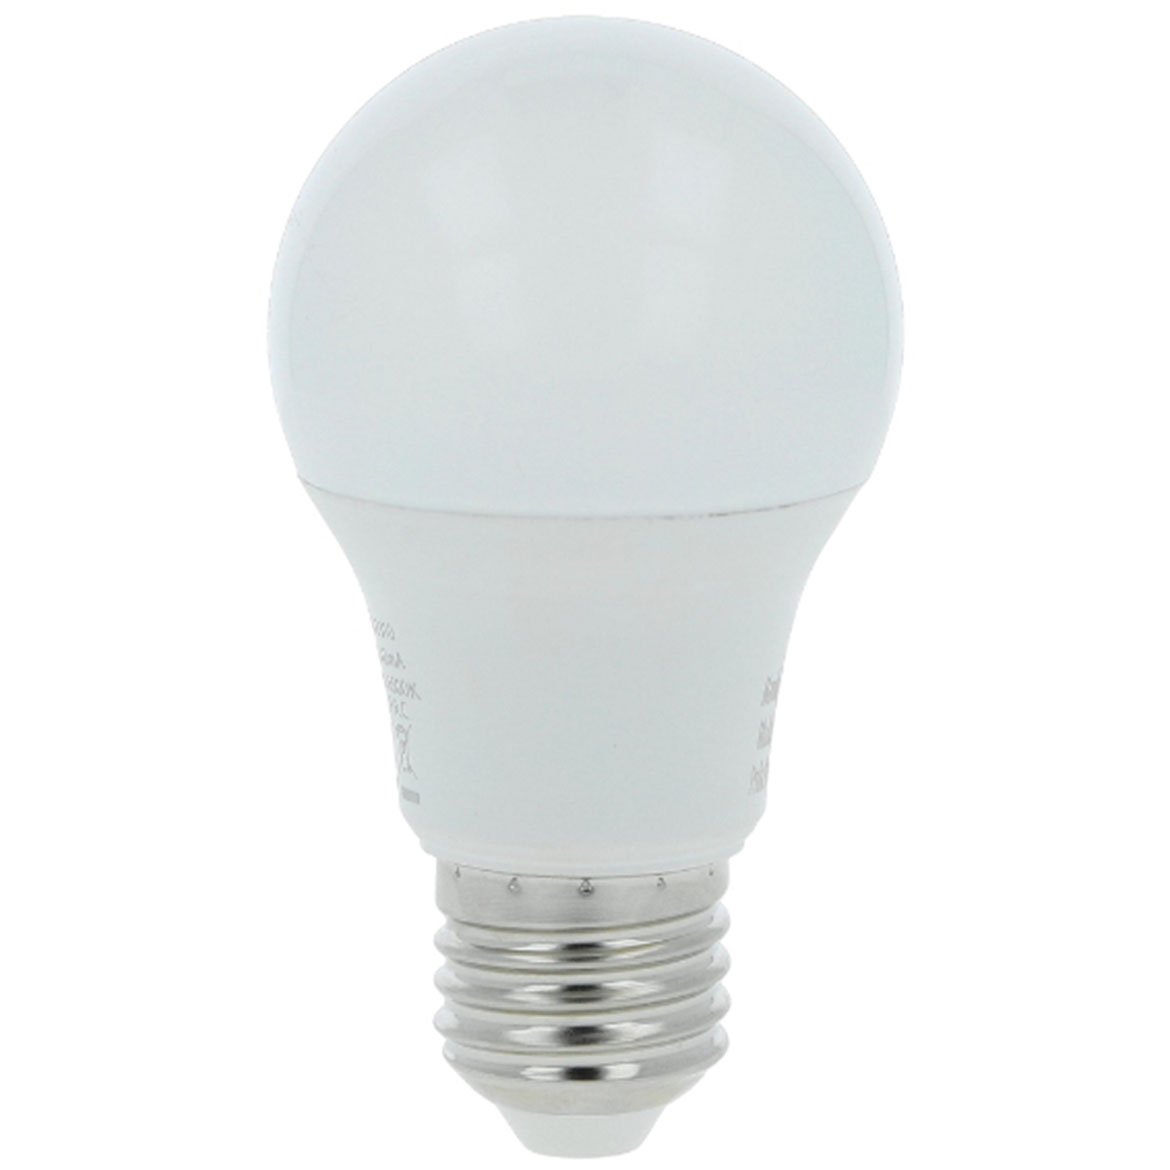 LED Lampe bulb 5W E27 6500K 500LM